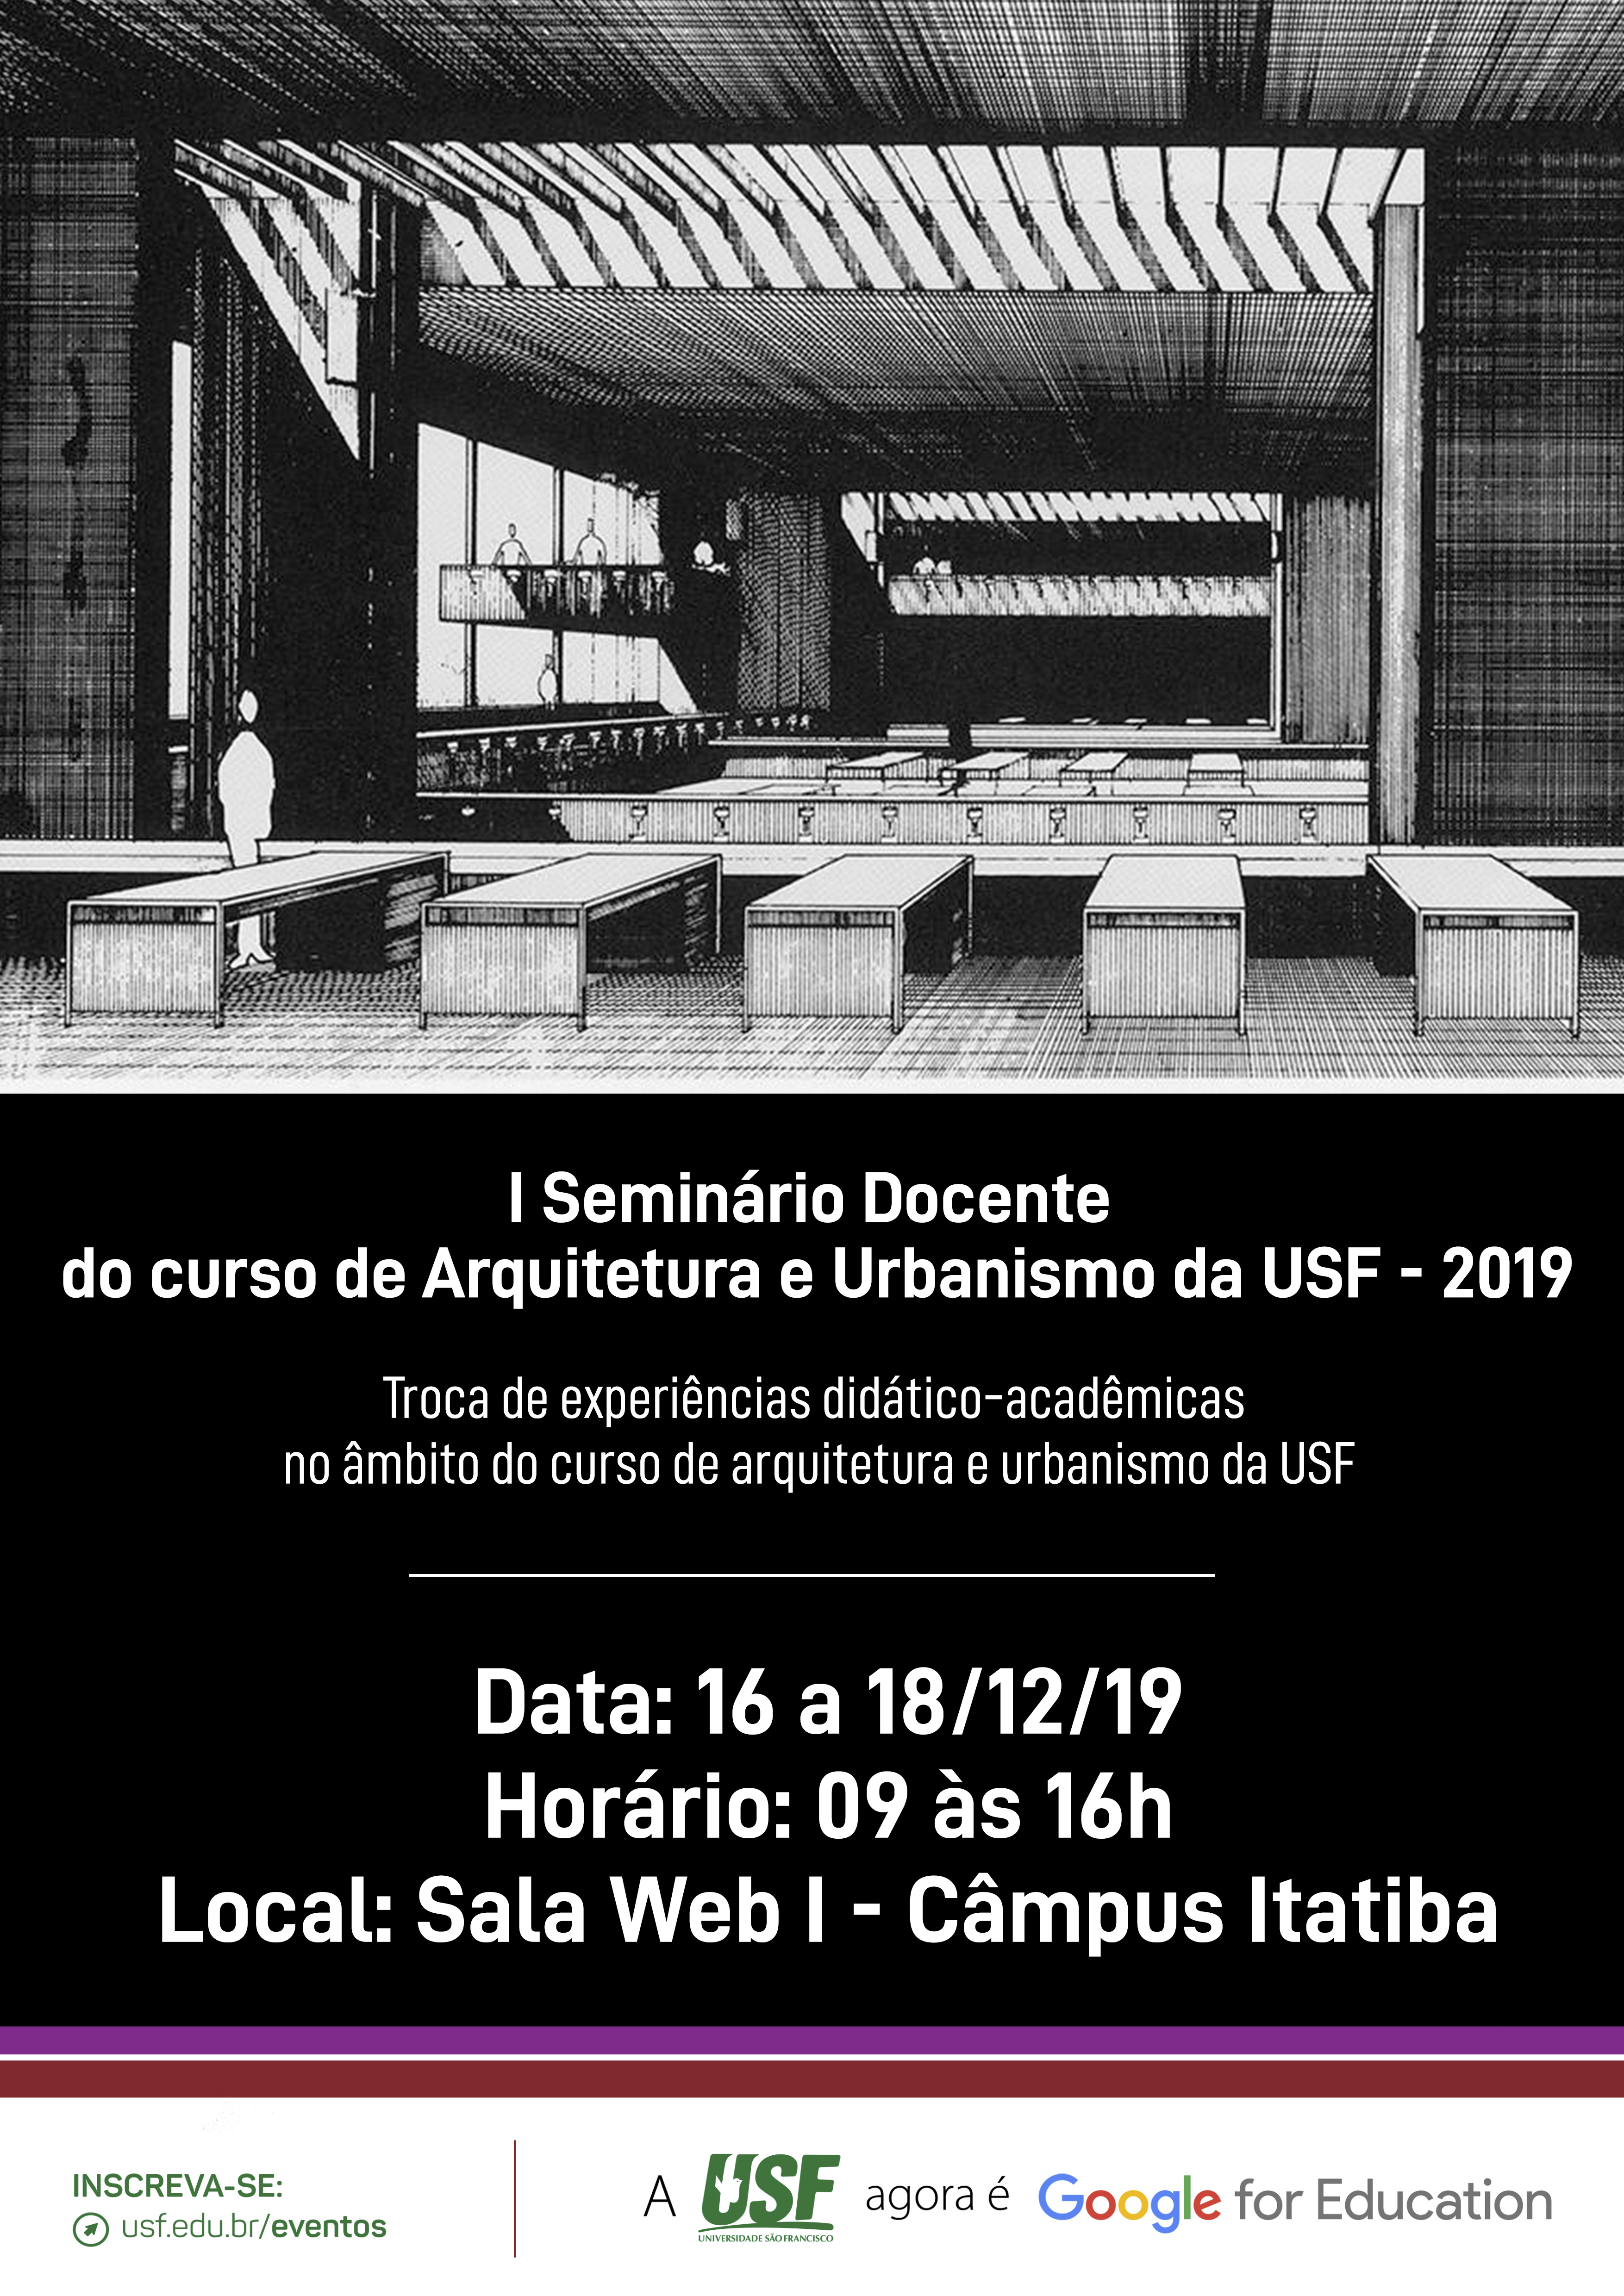 I Seminário Docente do curso de Arquitetura e Urbanismo da USF 